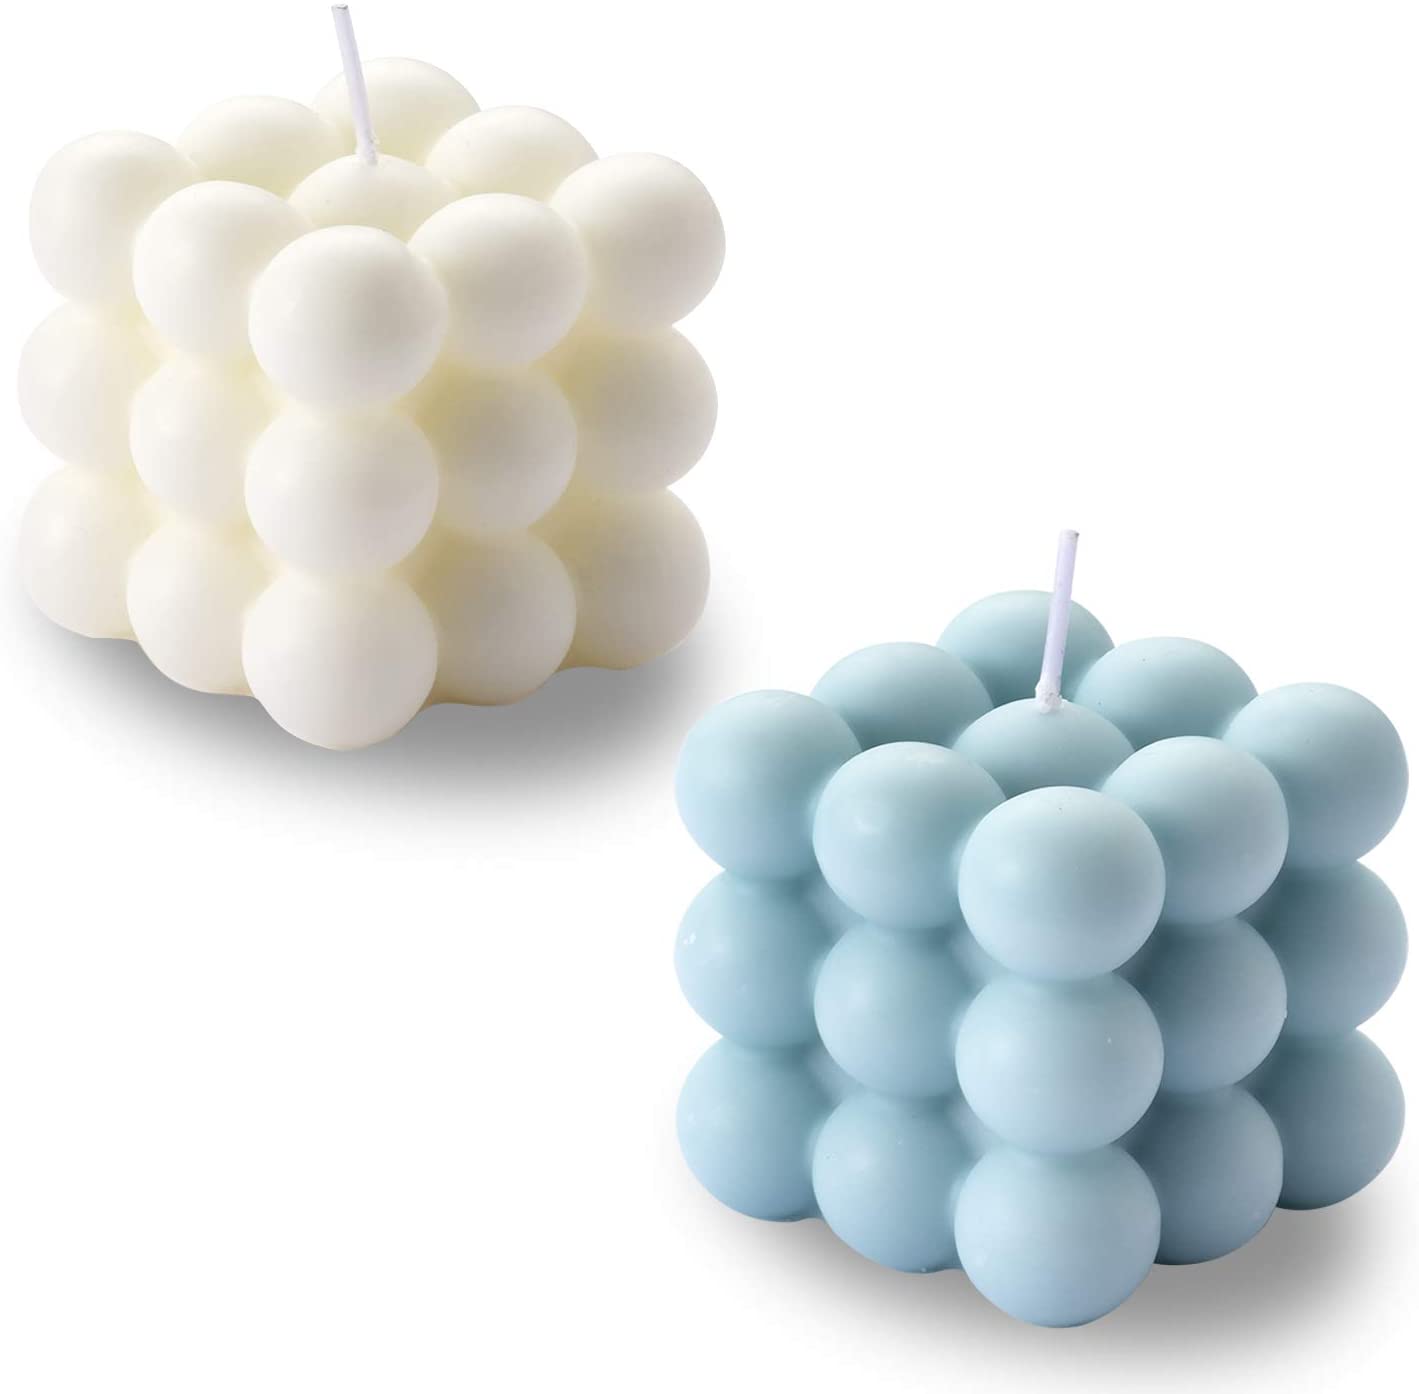 ACITHGL Bubble Cube Shape Unique Candles, 2-Count